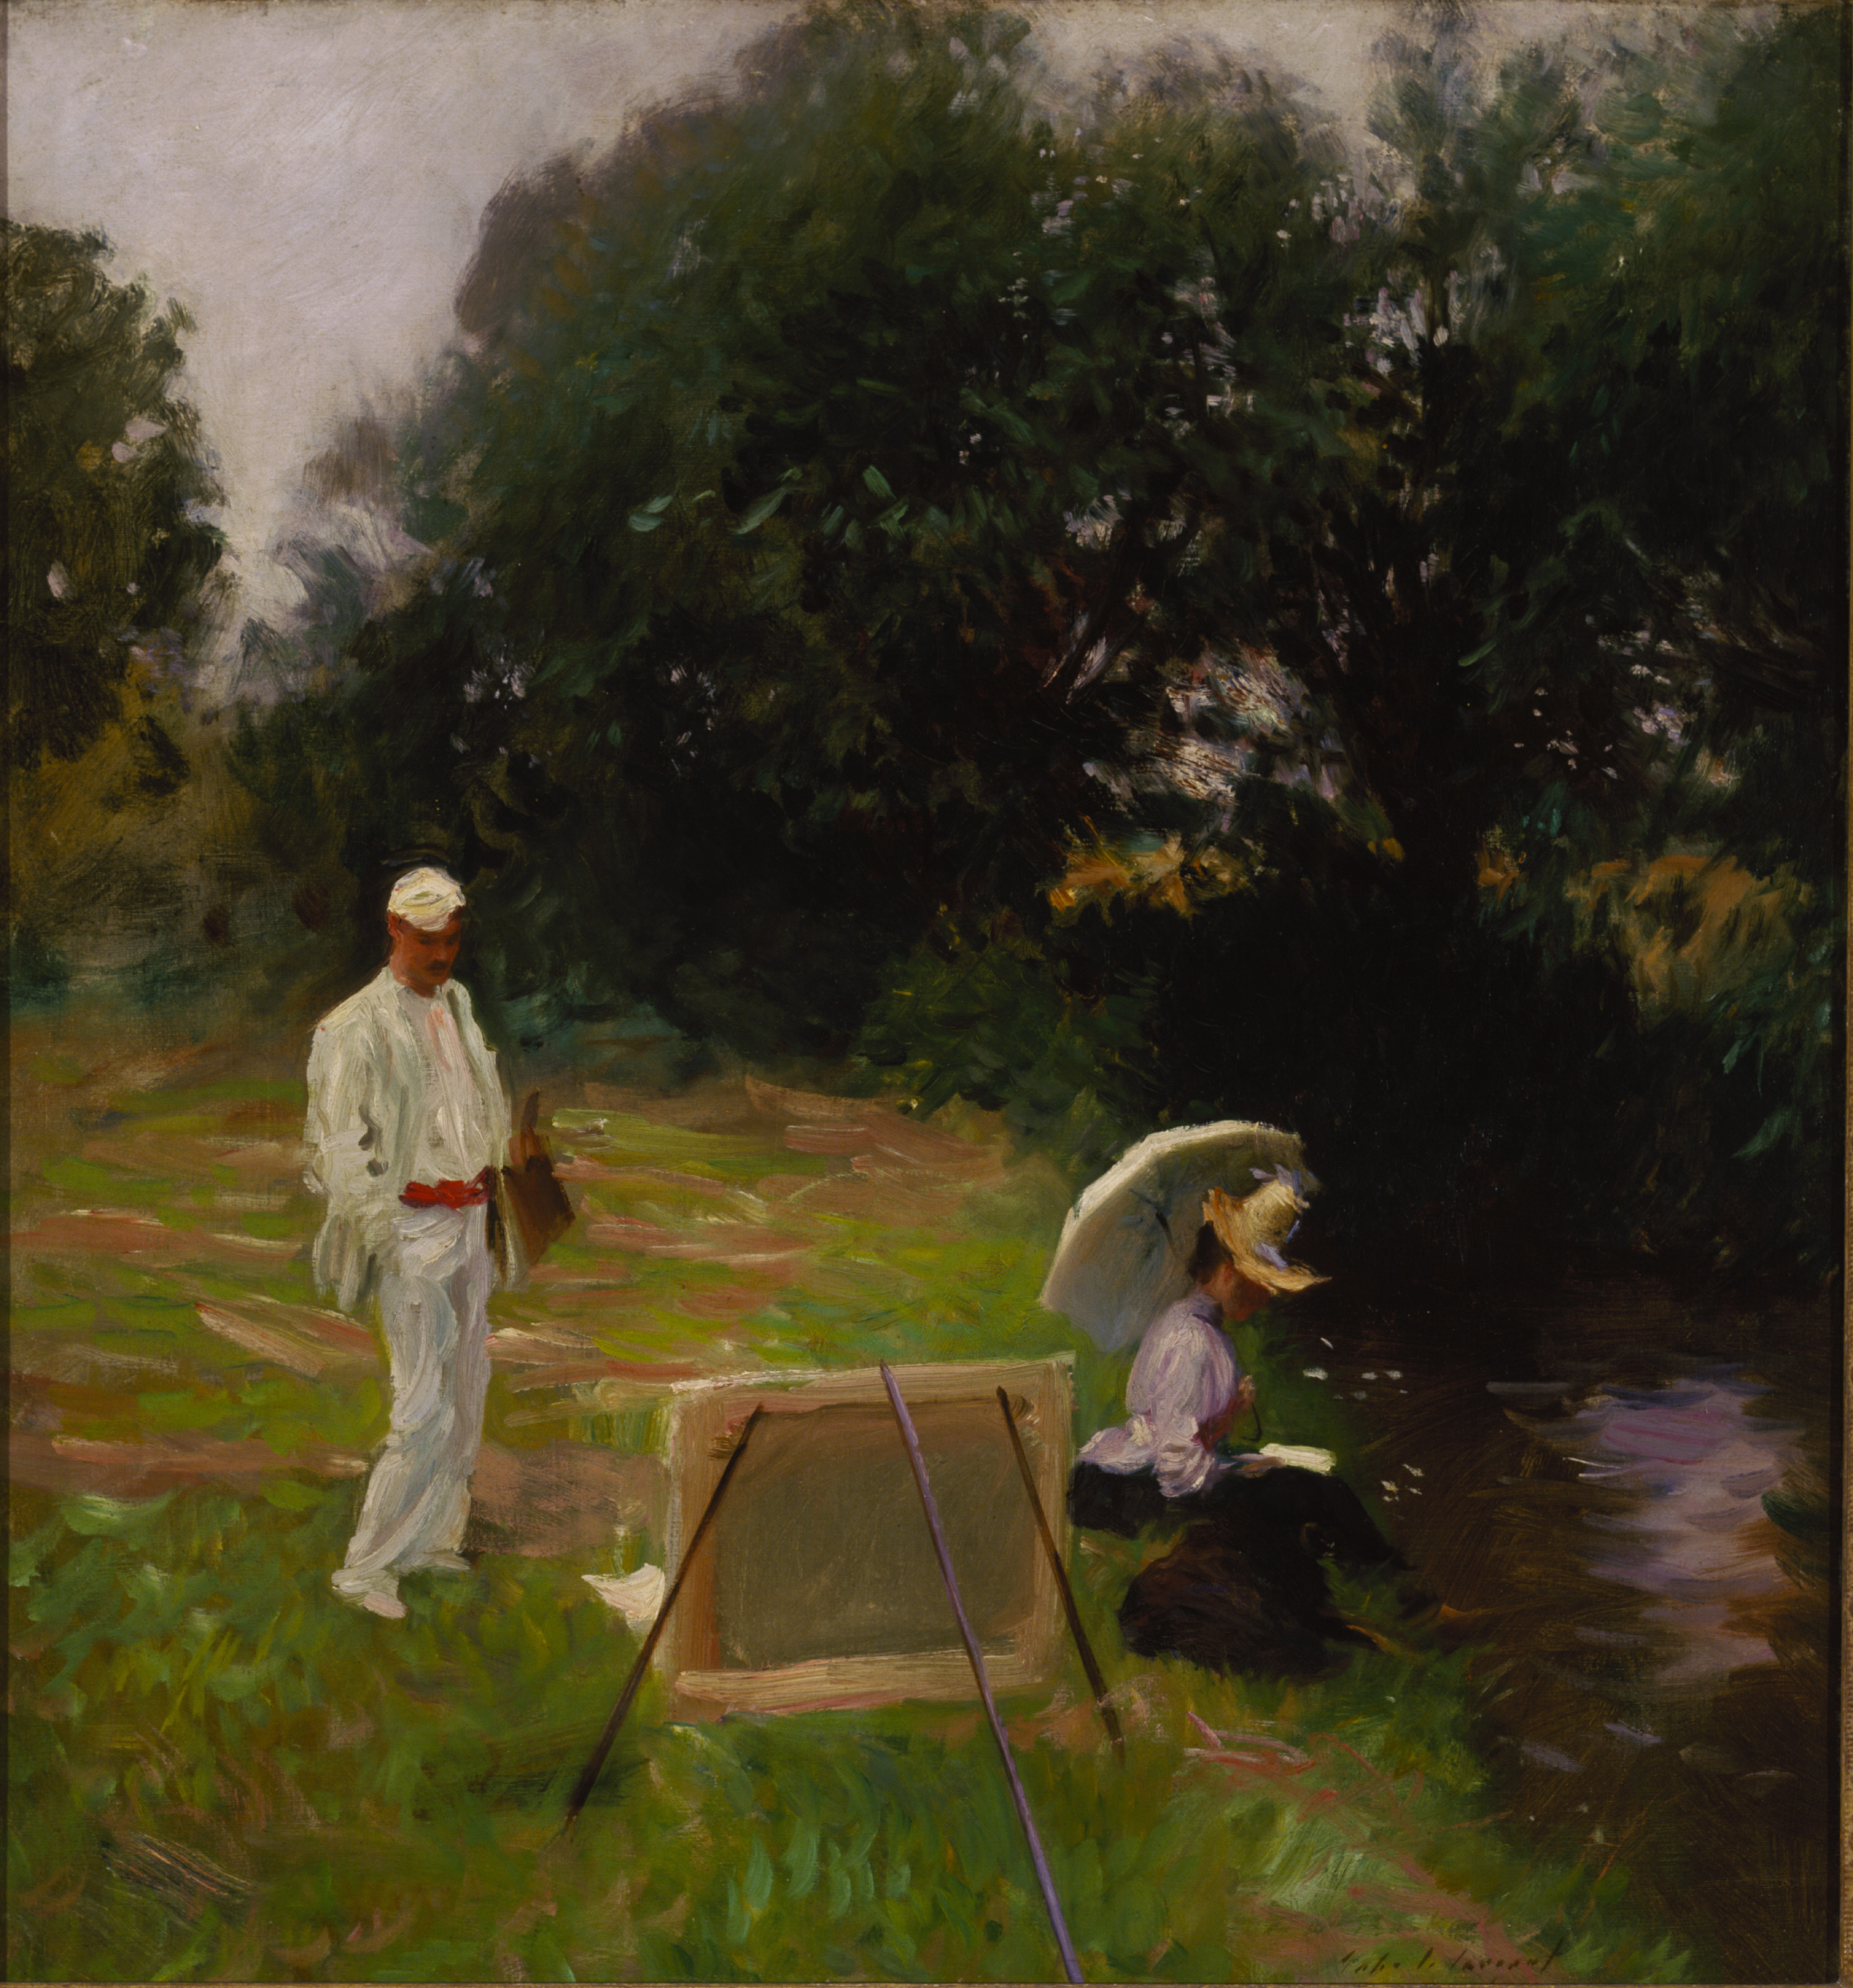 Dennis Miller Bunker peinture à Calcot by John Singer Sargent - 1888 Fondation Terra pour l'art américain